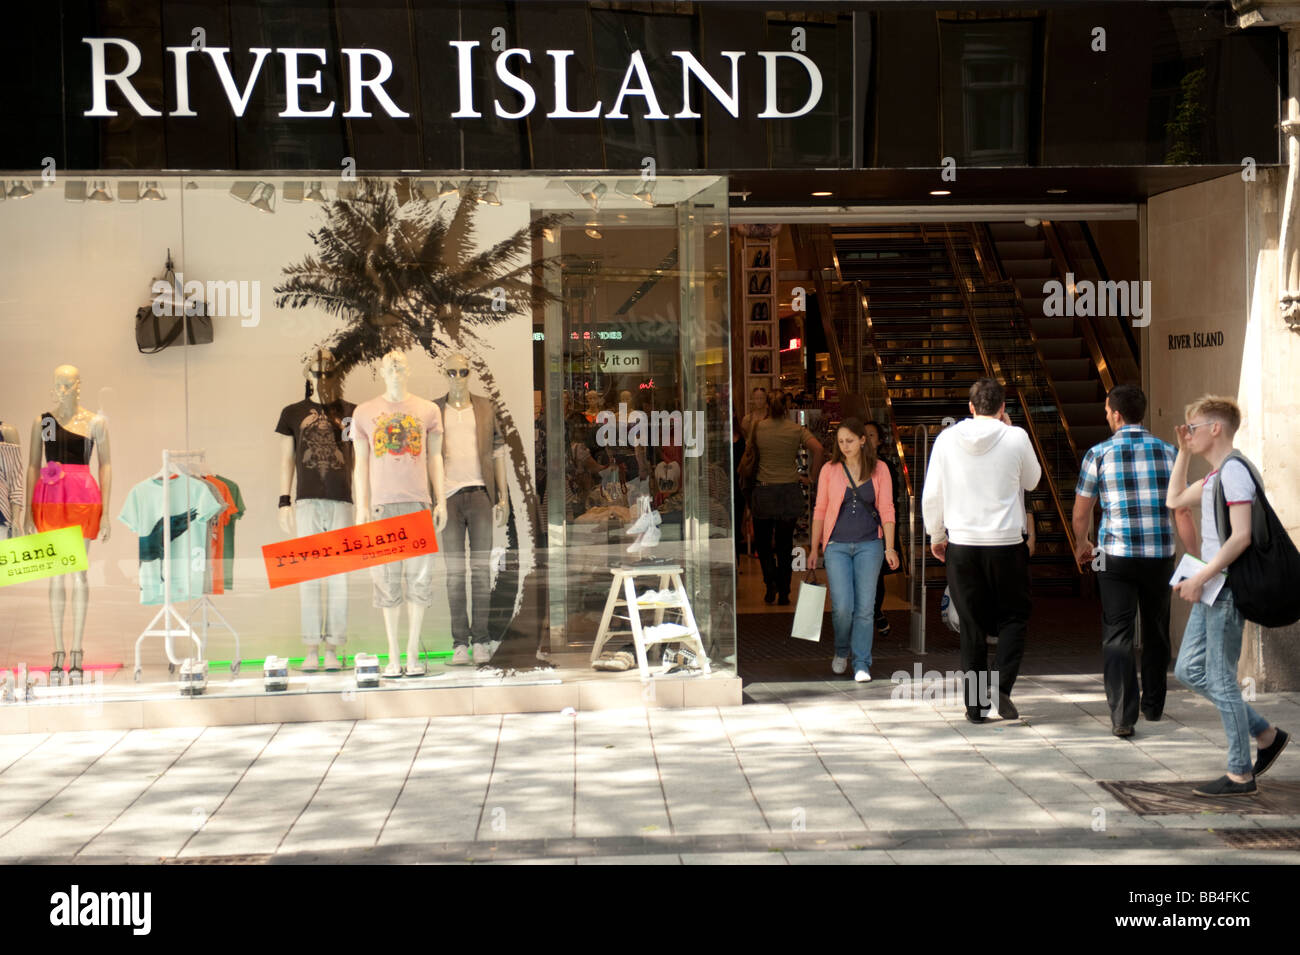 River Island tienda de ropa el centro de la ciudad de Cardiff Gales UK Foto de stock